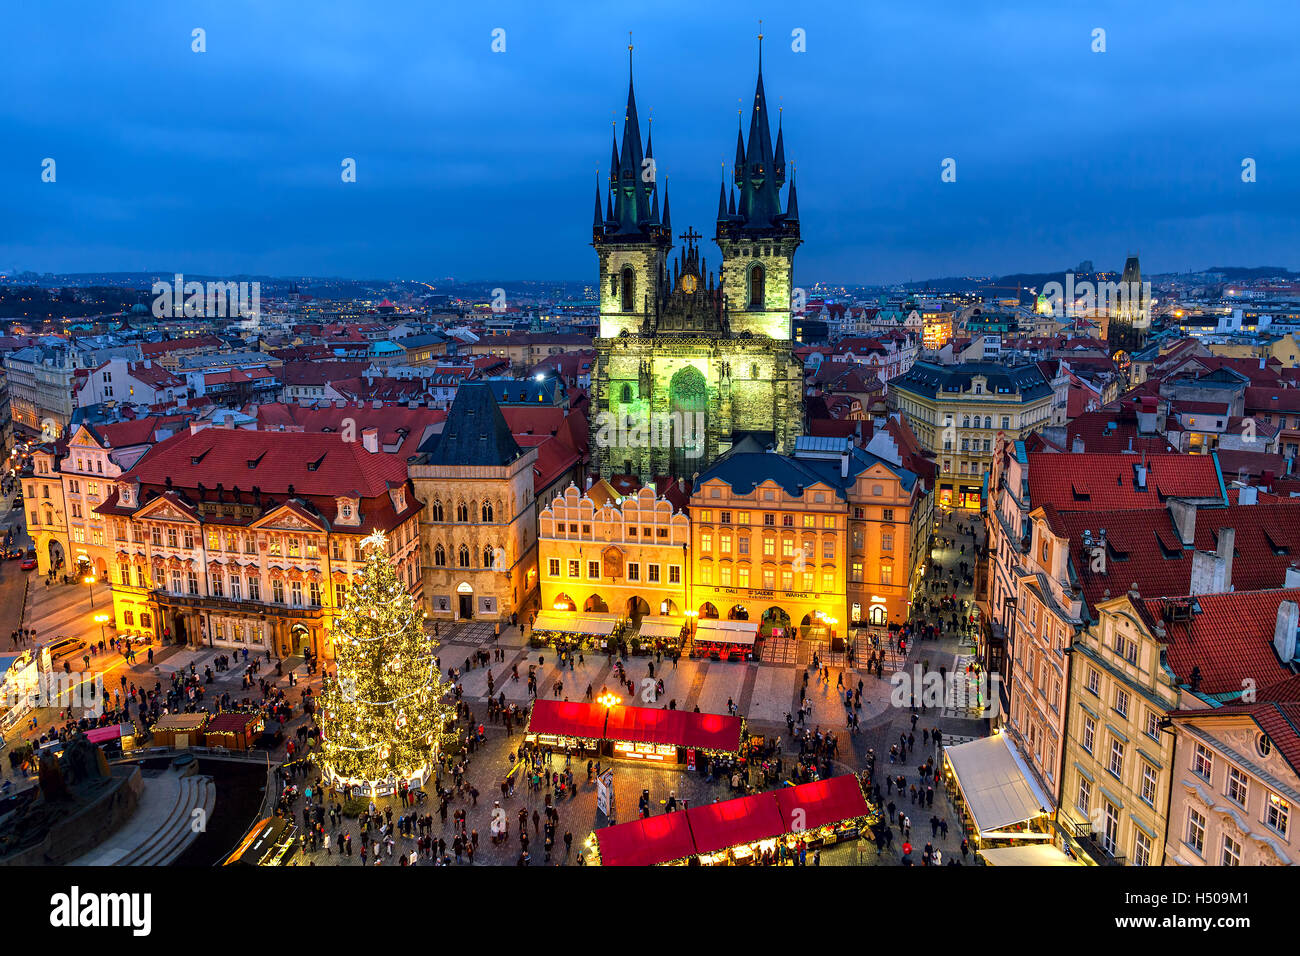 Blick von oben auf traditionellen Markt am Altstädter Ring in Prag, Tschechien. Stockfoto